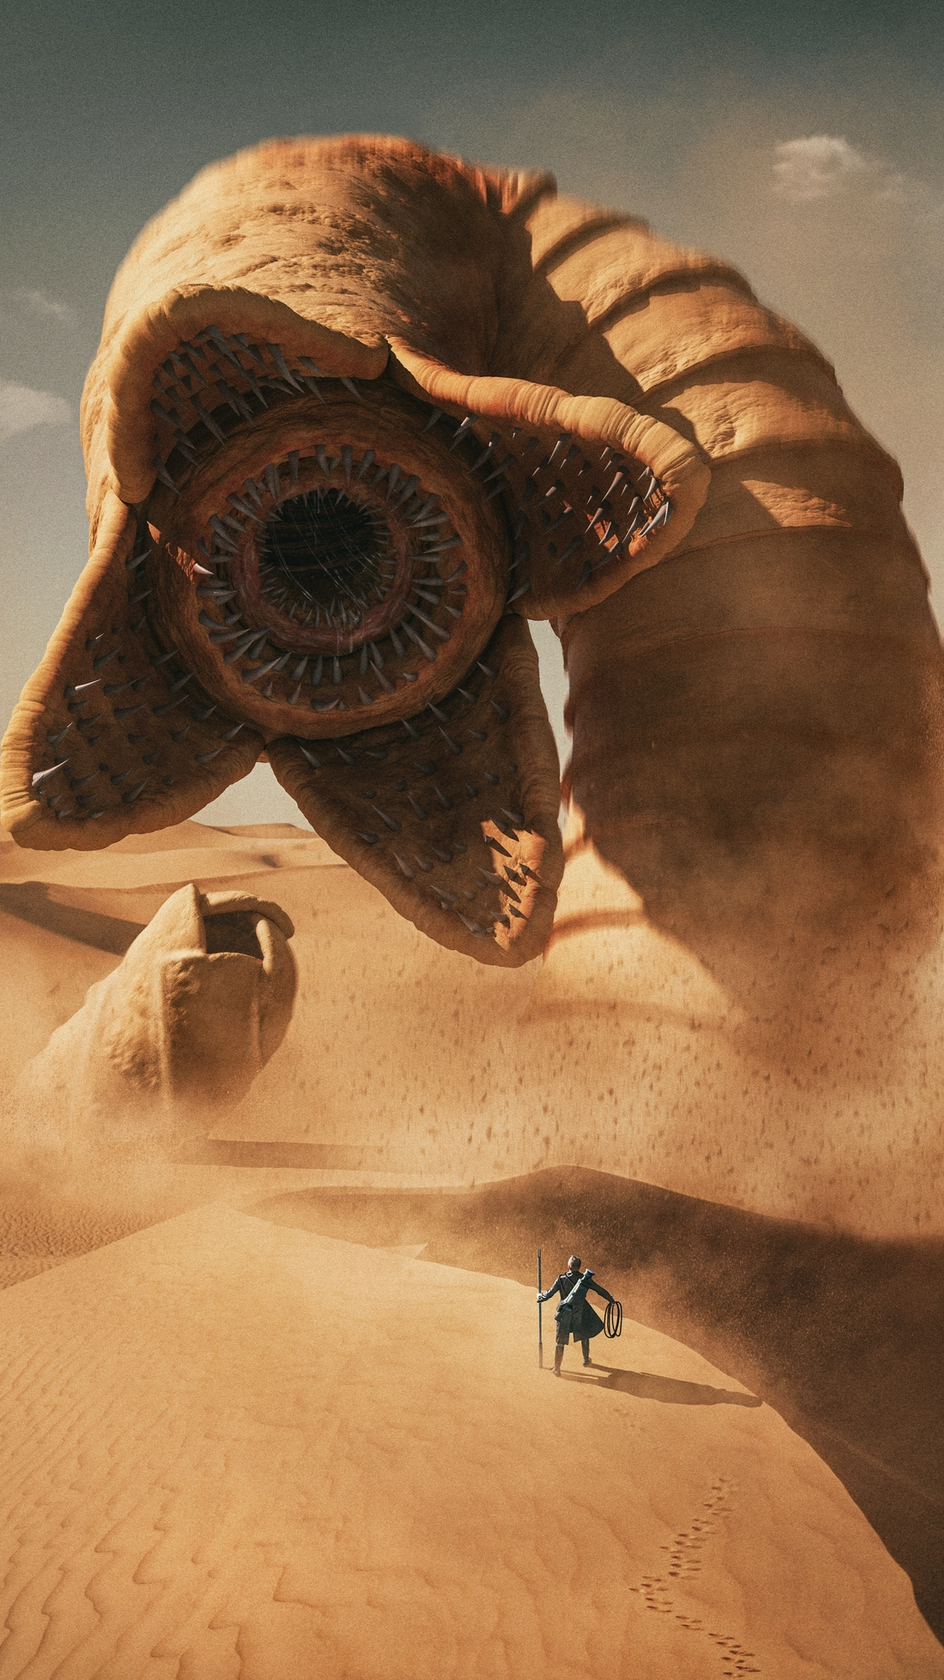 400米超大沙漠蠕虫,这头科幻大片《沙丘》中的怪兽令人震撼!